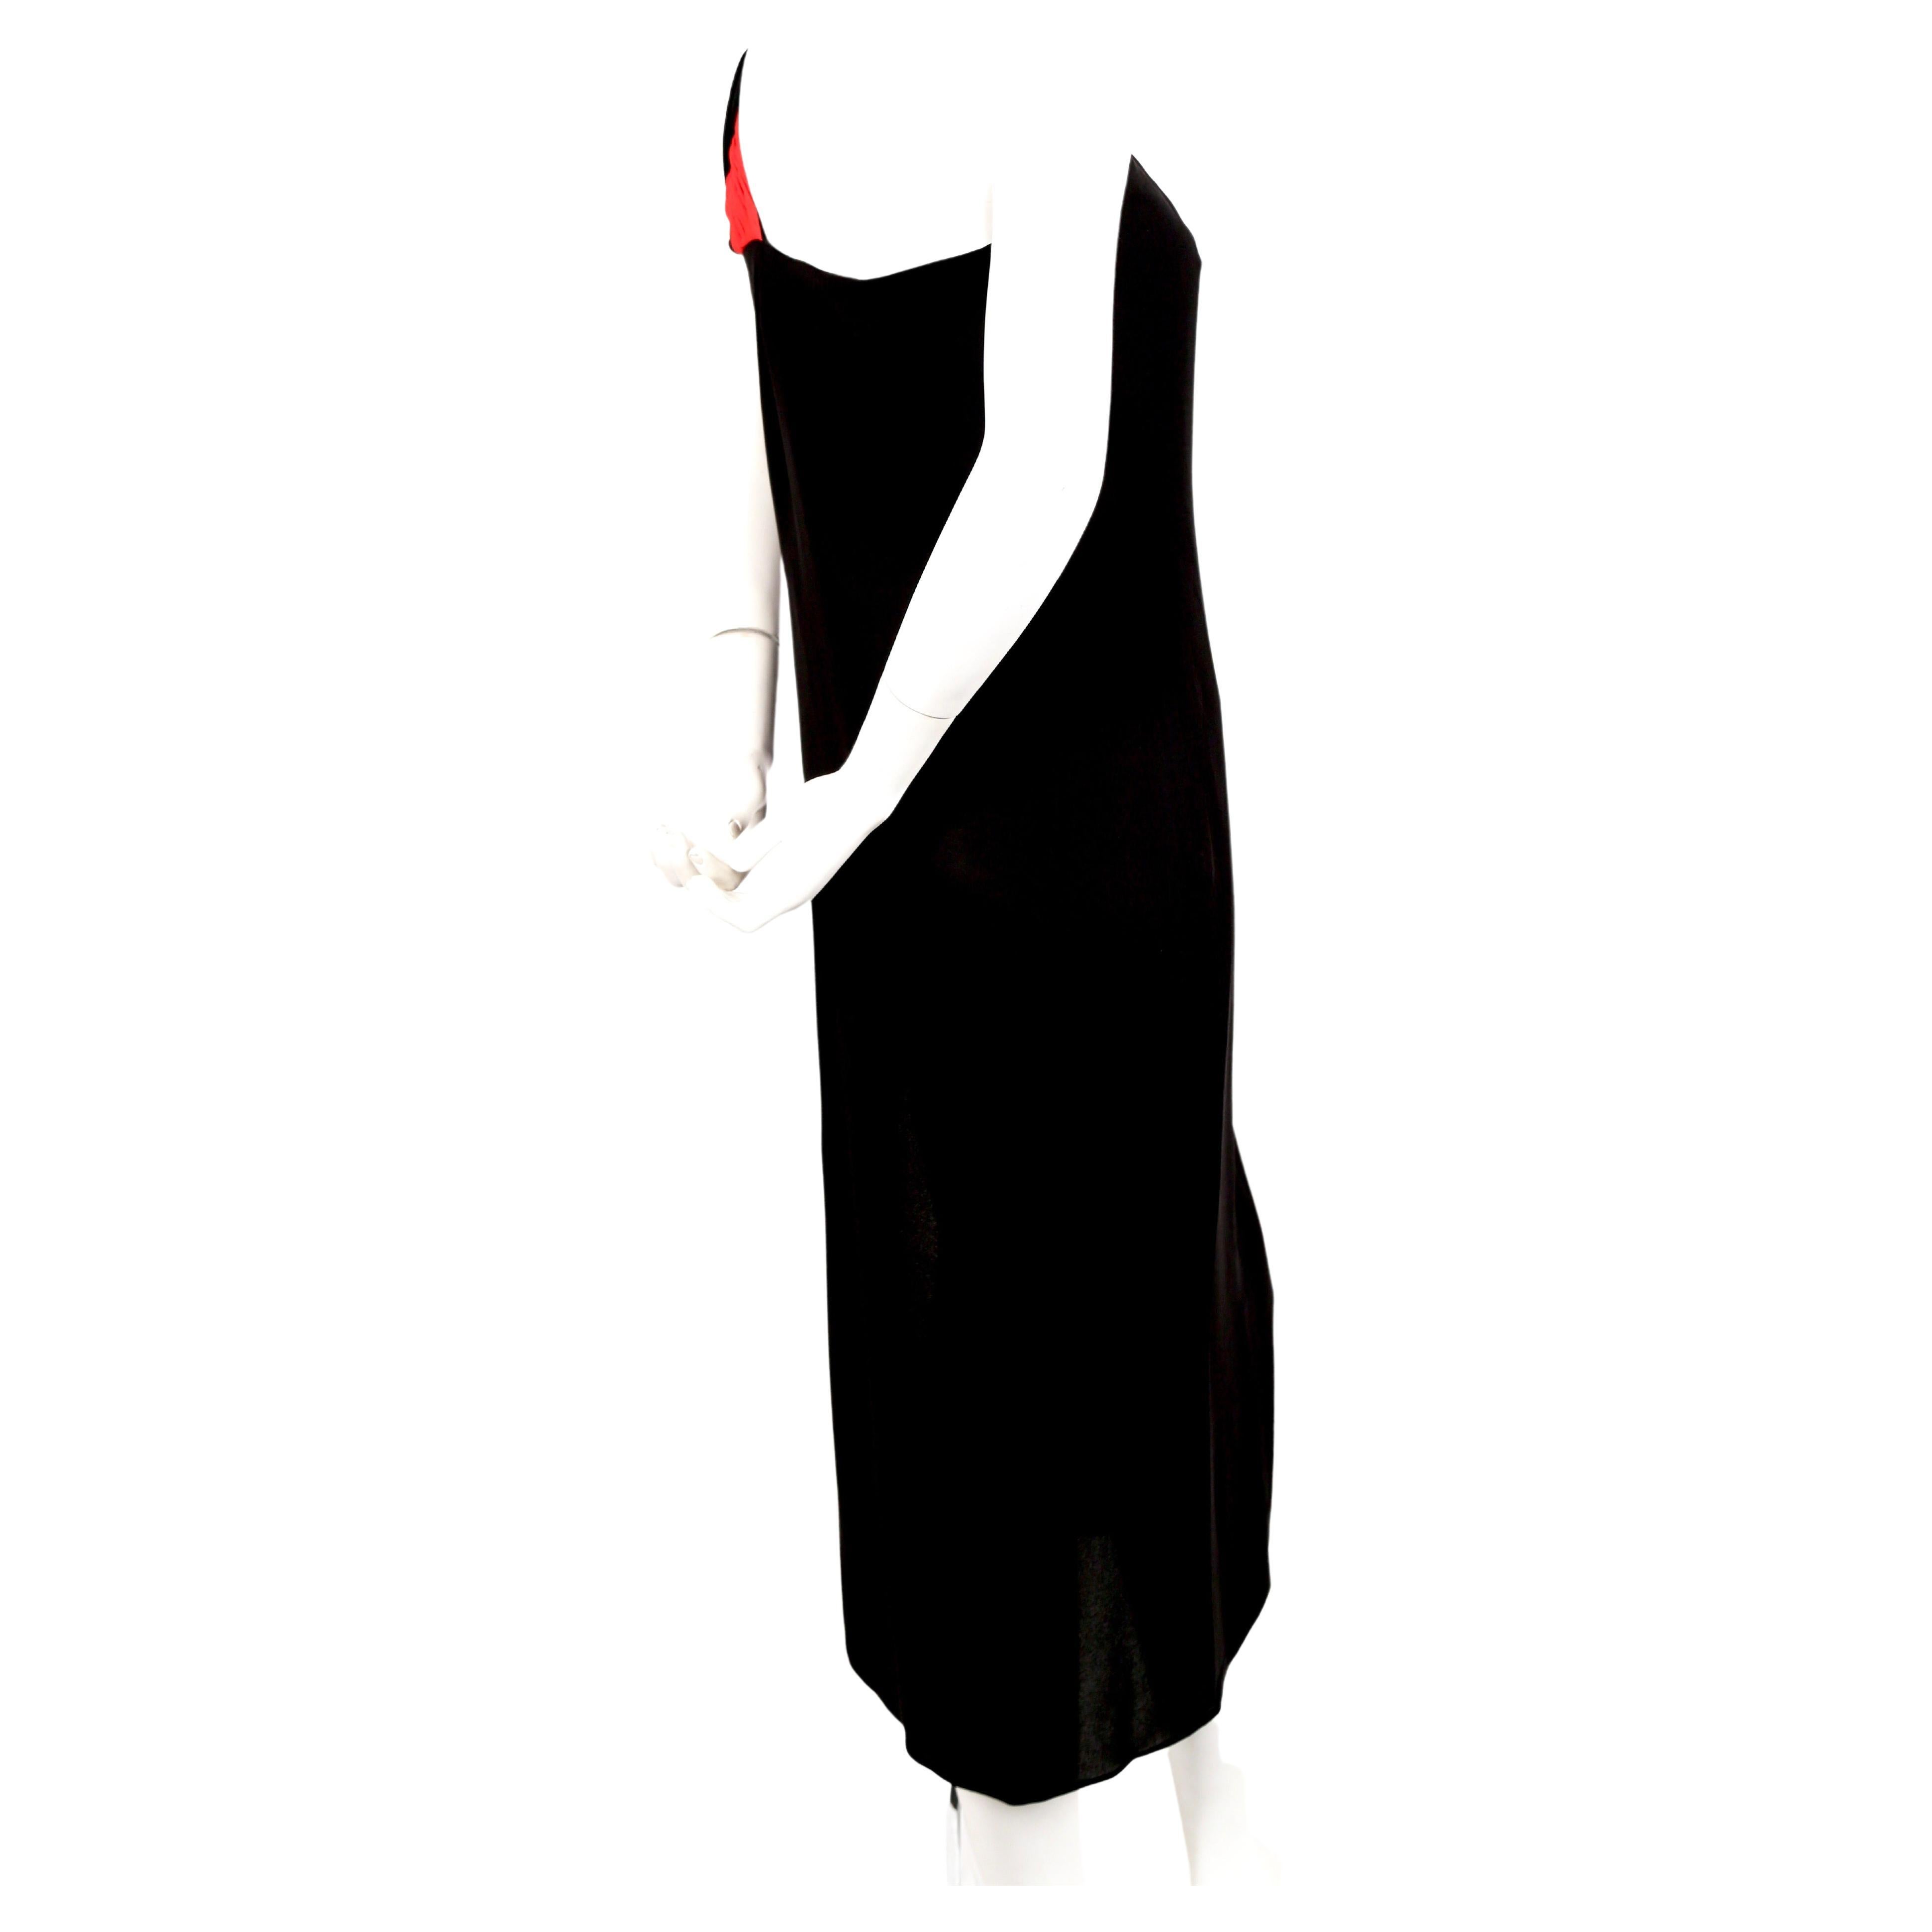 Robe grecque en soie noir de jais avec une seule épaule plissée rouge de Valentino datant des années 1990. Aucune taille n'est indiquée, mais ce modèle conviendrait mieux à un US 4 ou à un 36 ou 38 français. La robe est dotée d'un corset interne